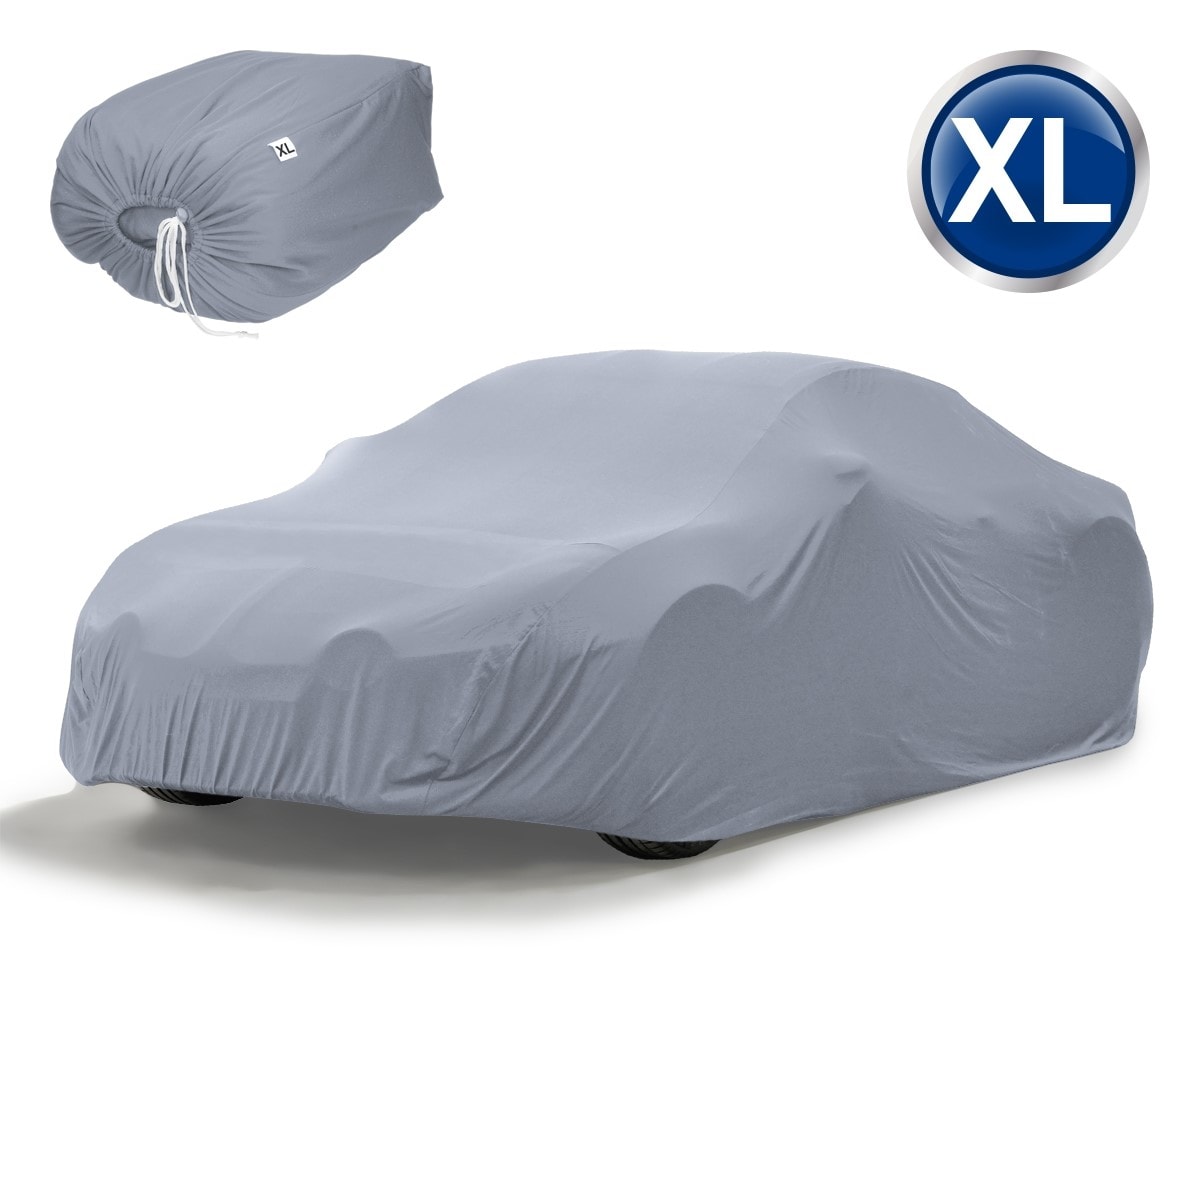 Housse de protection intérieur voiture couverture gris taille xl